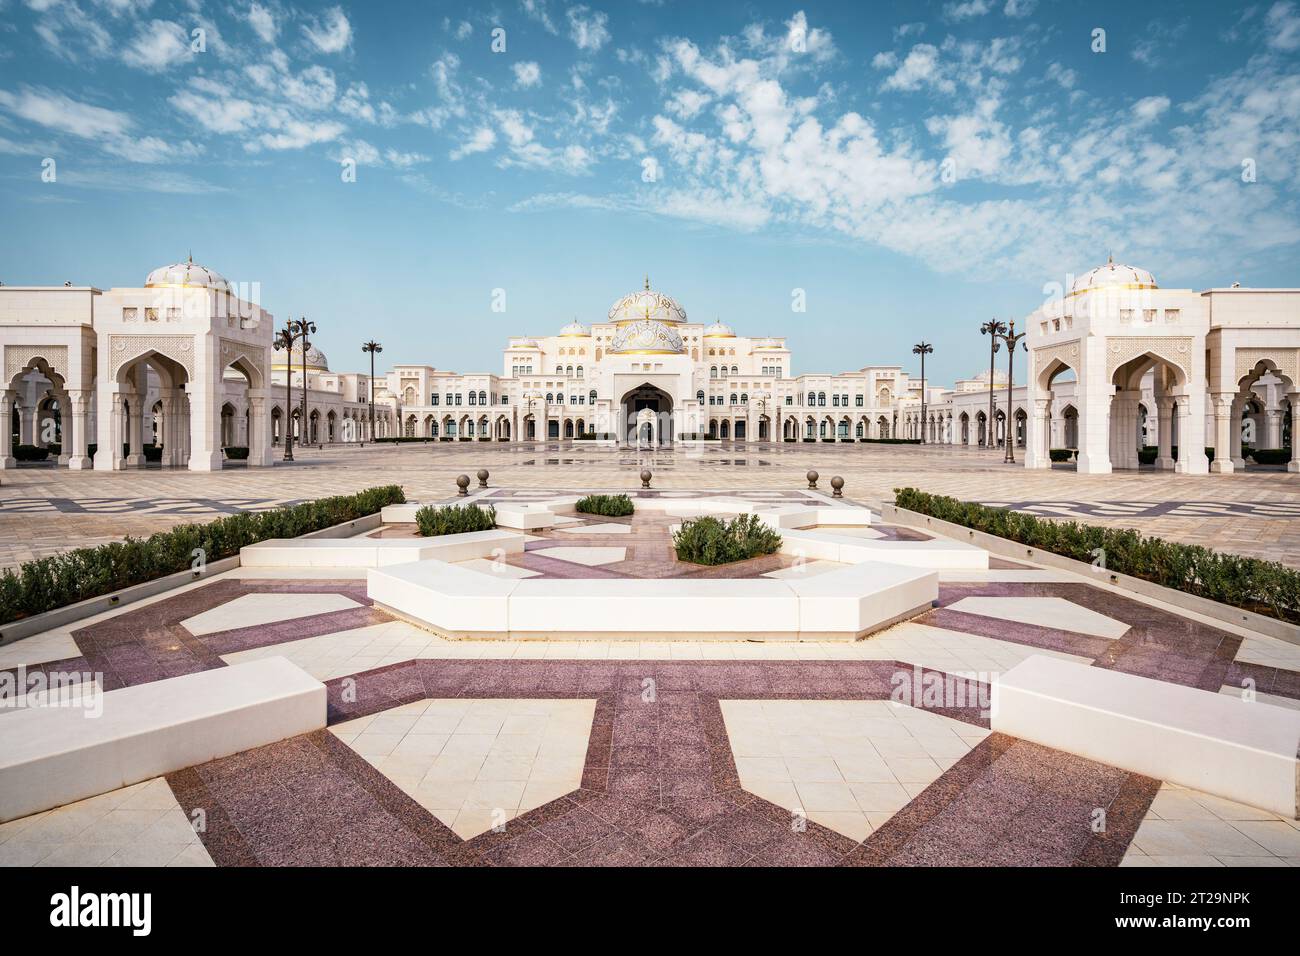 Qasr Al Watan Presidential Palace in Abu Dhabi, United Arab Emirates (UAE). Stock Photo